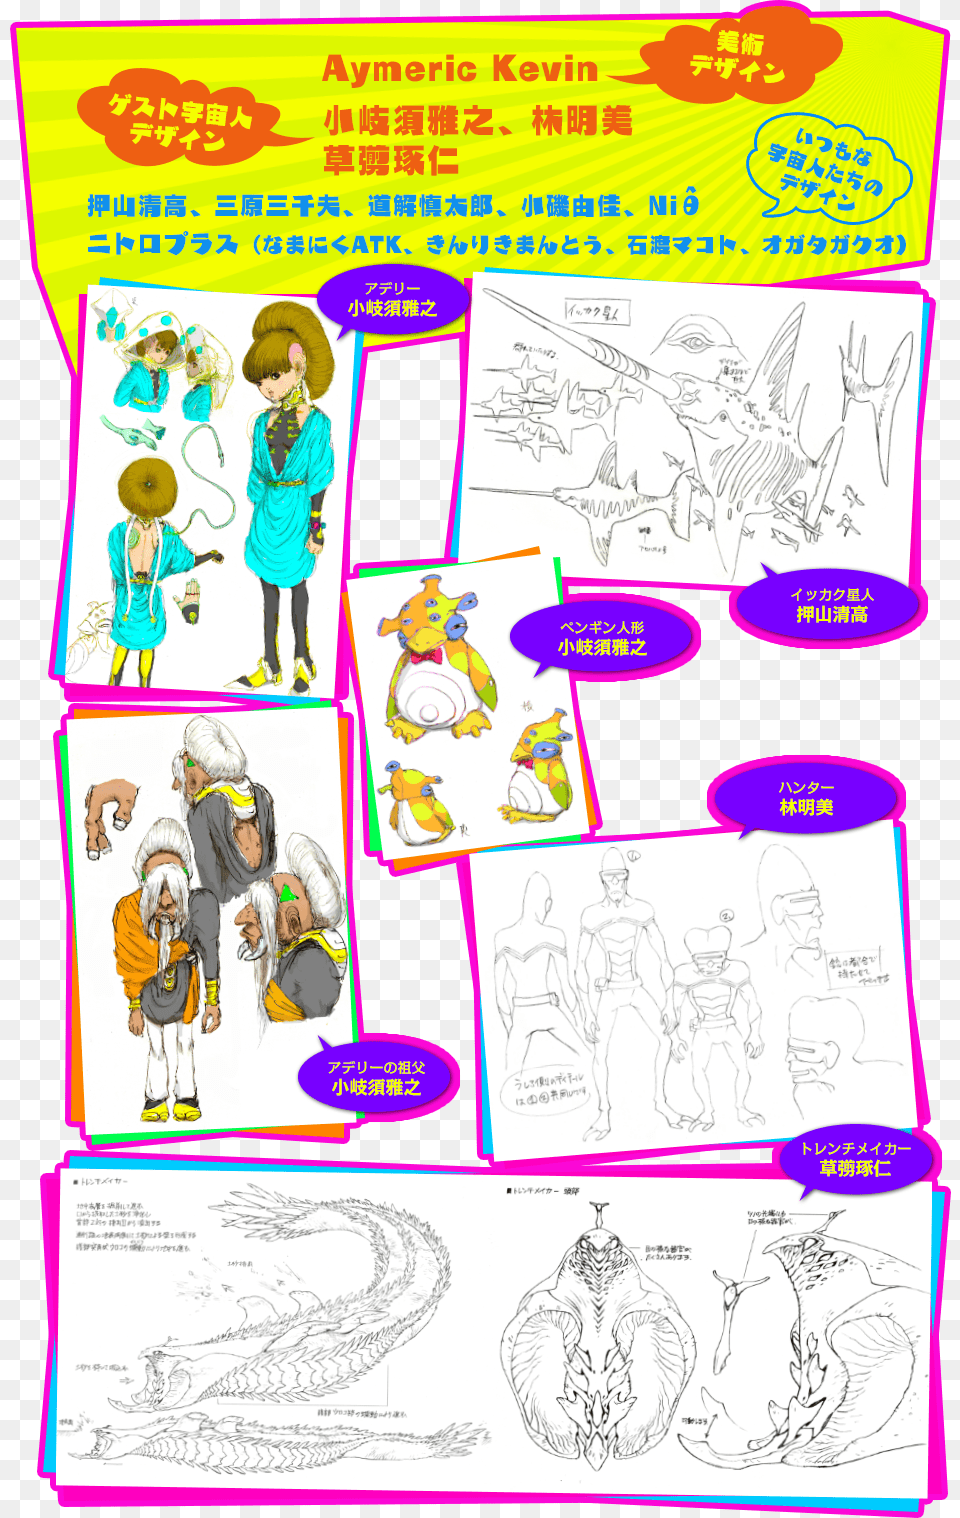 2014 Bones Project Space Dandy Cartoon, Publication, Book, Comics, Person Free Png